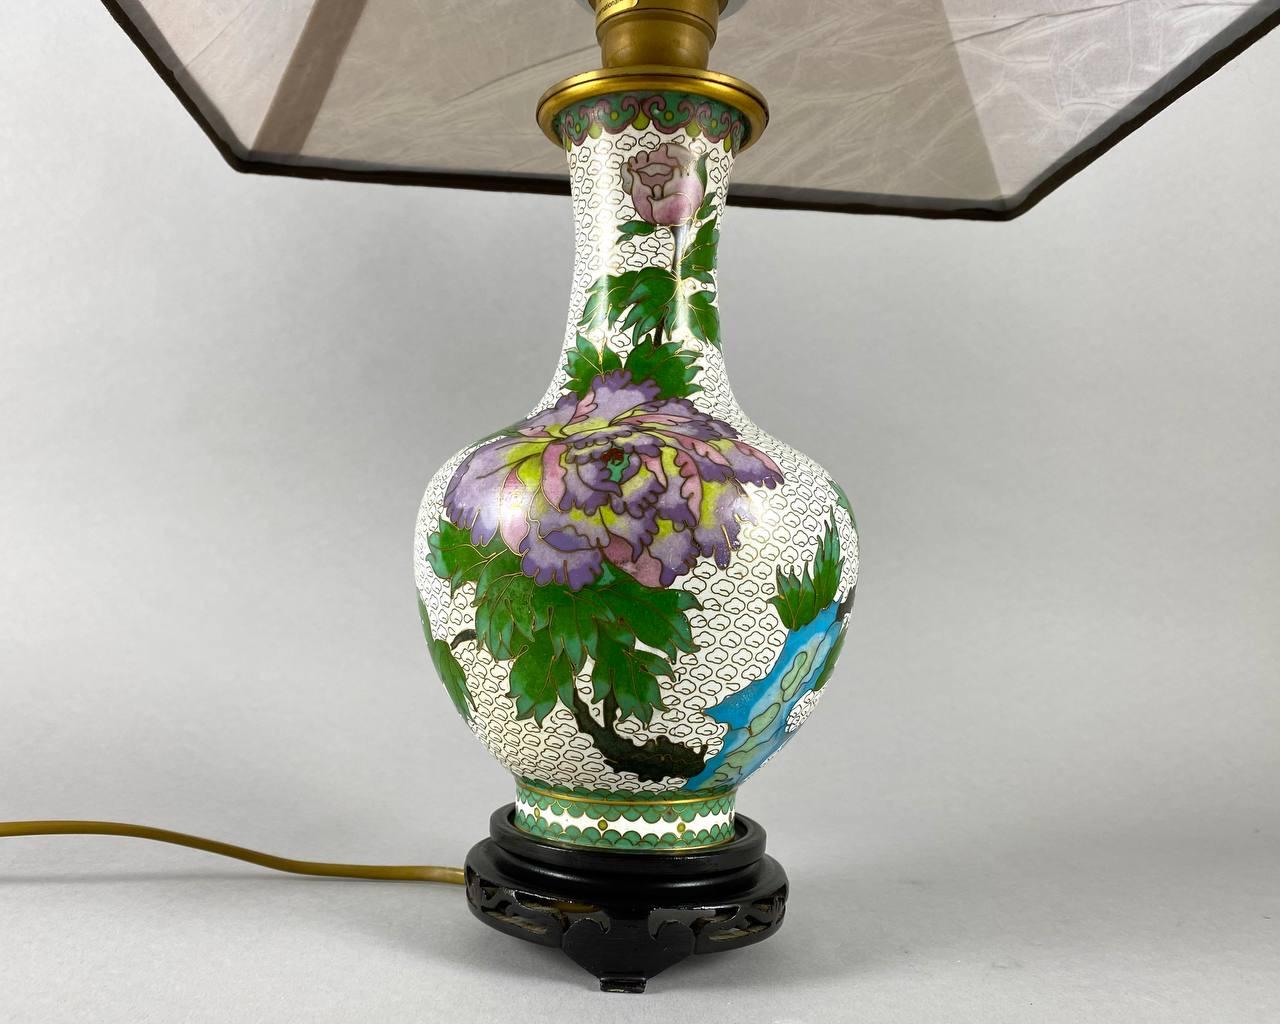 Lampe de table chinoise vintage. Vers les années 1970,  en métal, en émail, en textile, en peinture décorative.

La base de la lampe est réalisée sous la forme d'un vase avec un col haut et étroit. La base et le col du vase sont décorés de pivoines